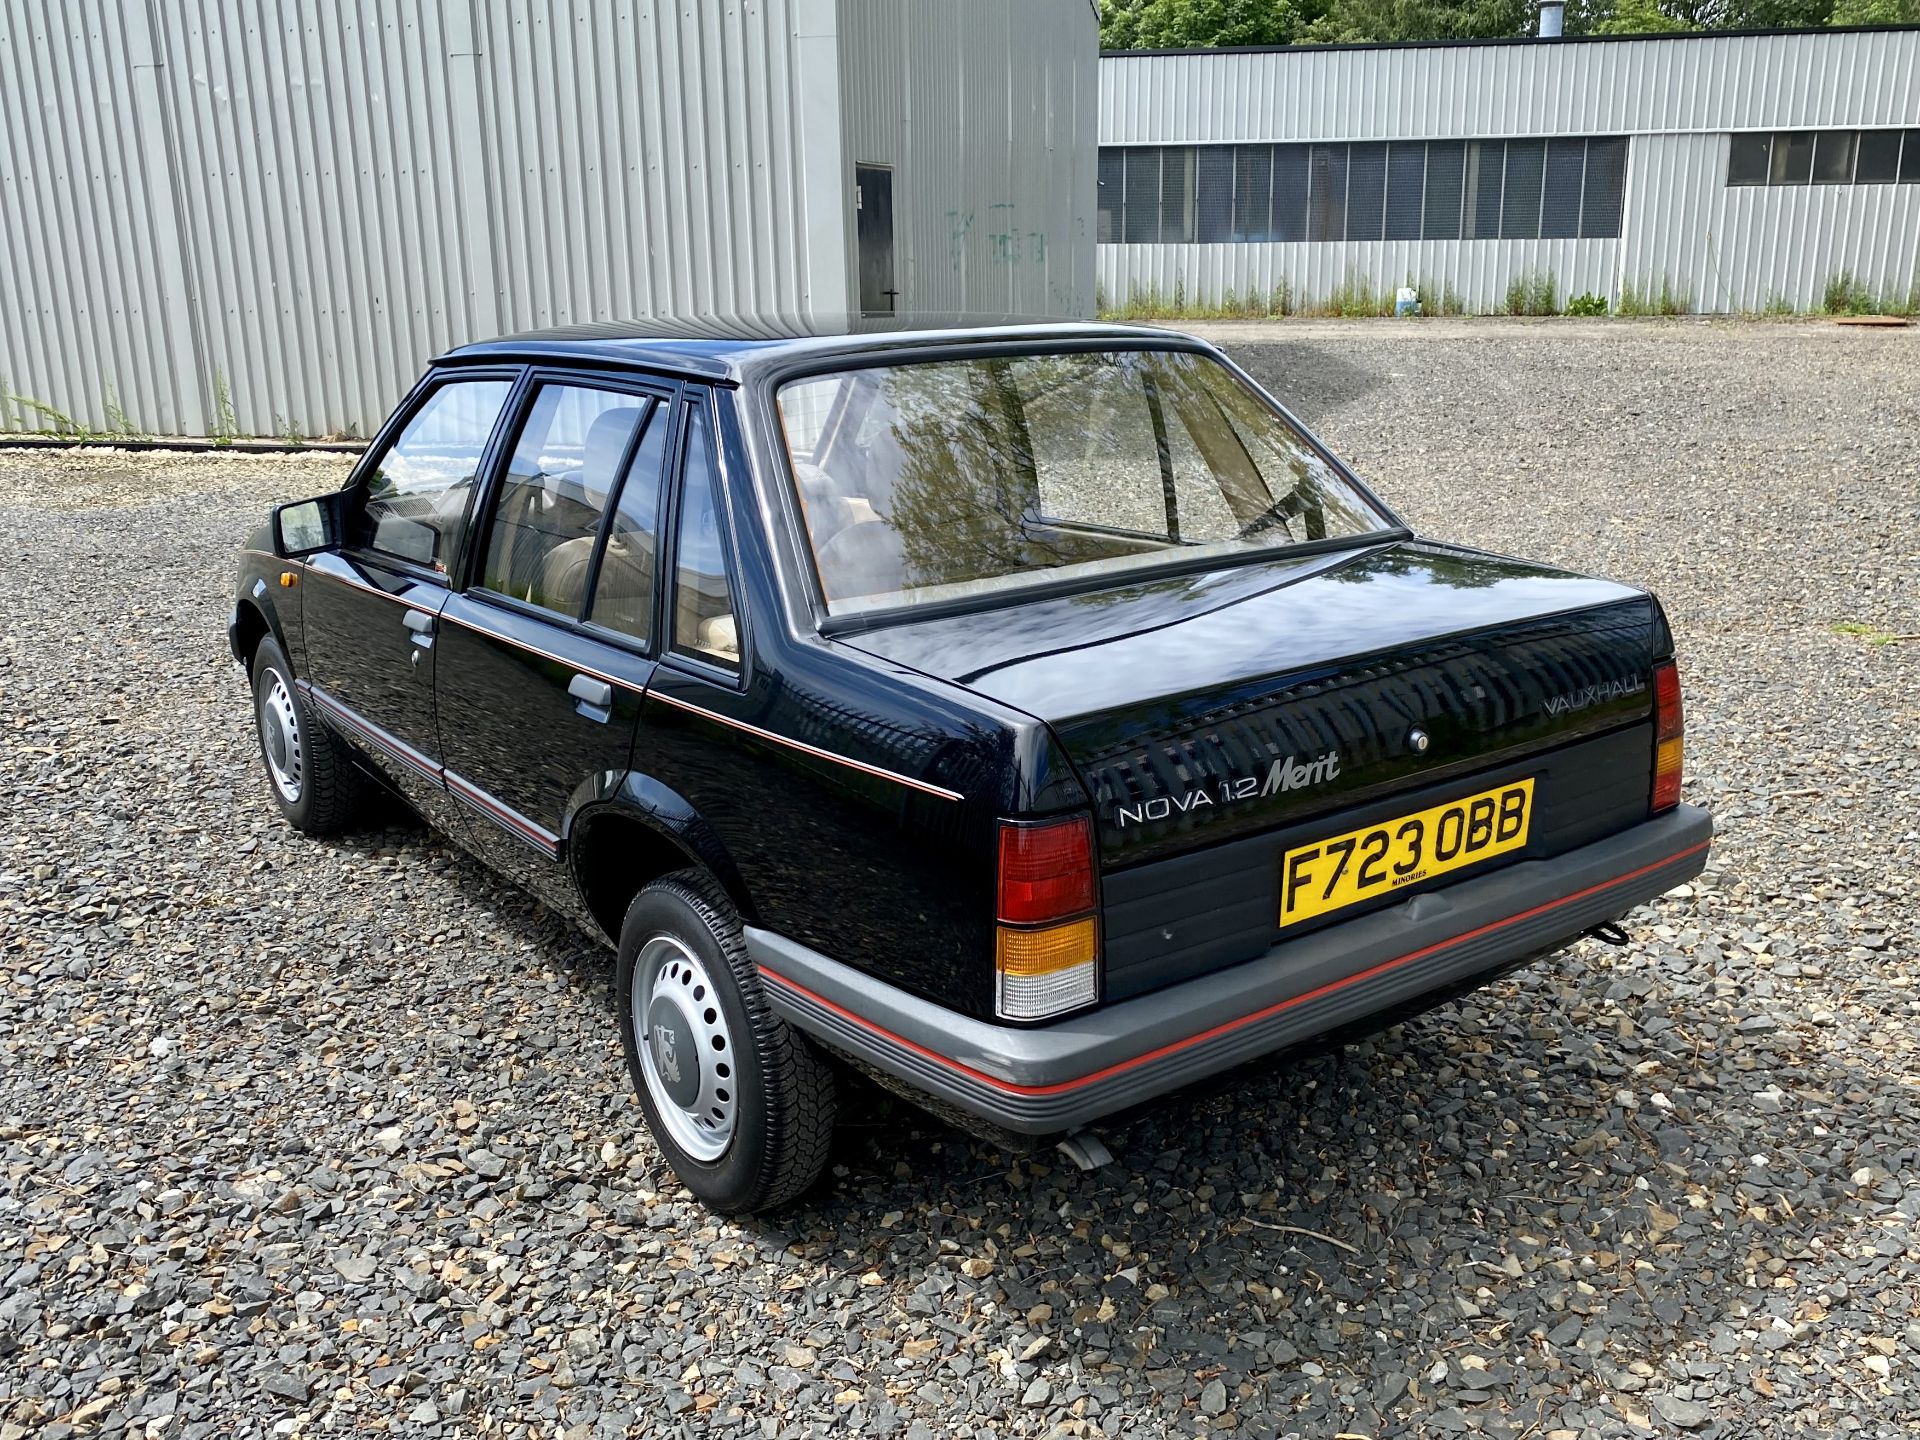 Vauxhall Nova Merit - Image 9 of 39